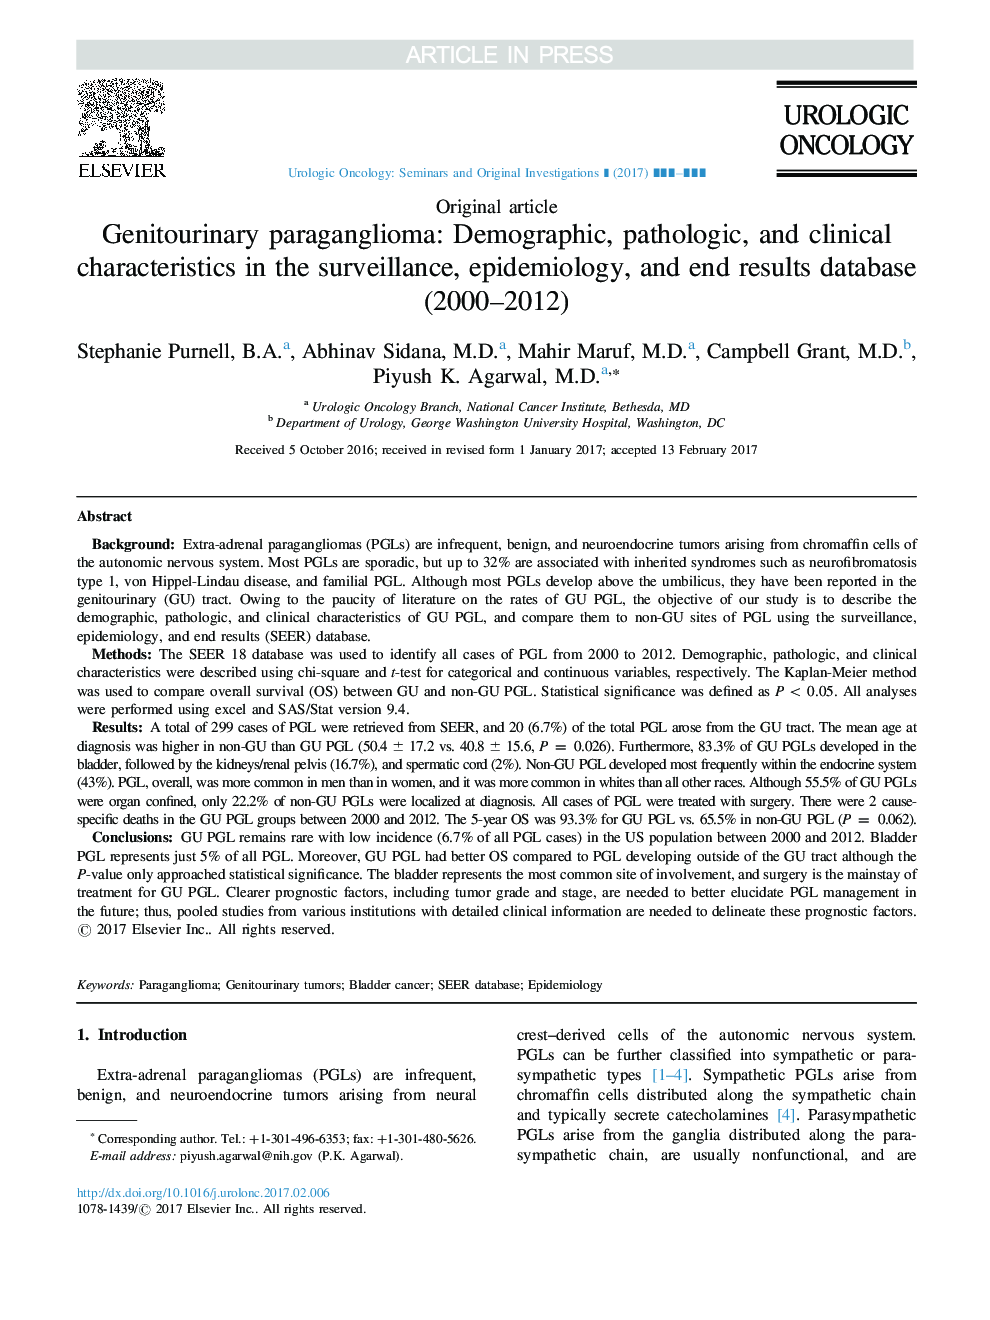 پاراژنگلیوم تناسلی: مشخصات دموگرافیک، پاتولوژیک و بالینی در پایگاه مراقبت های بهداشتی، اپیدمیولوژی، و پایان (2000-2012) 